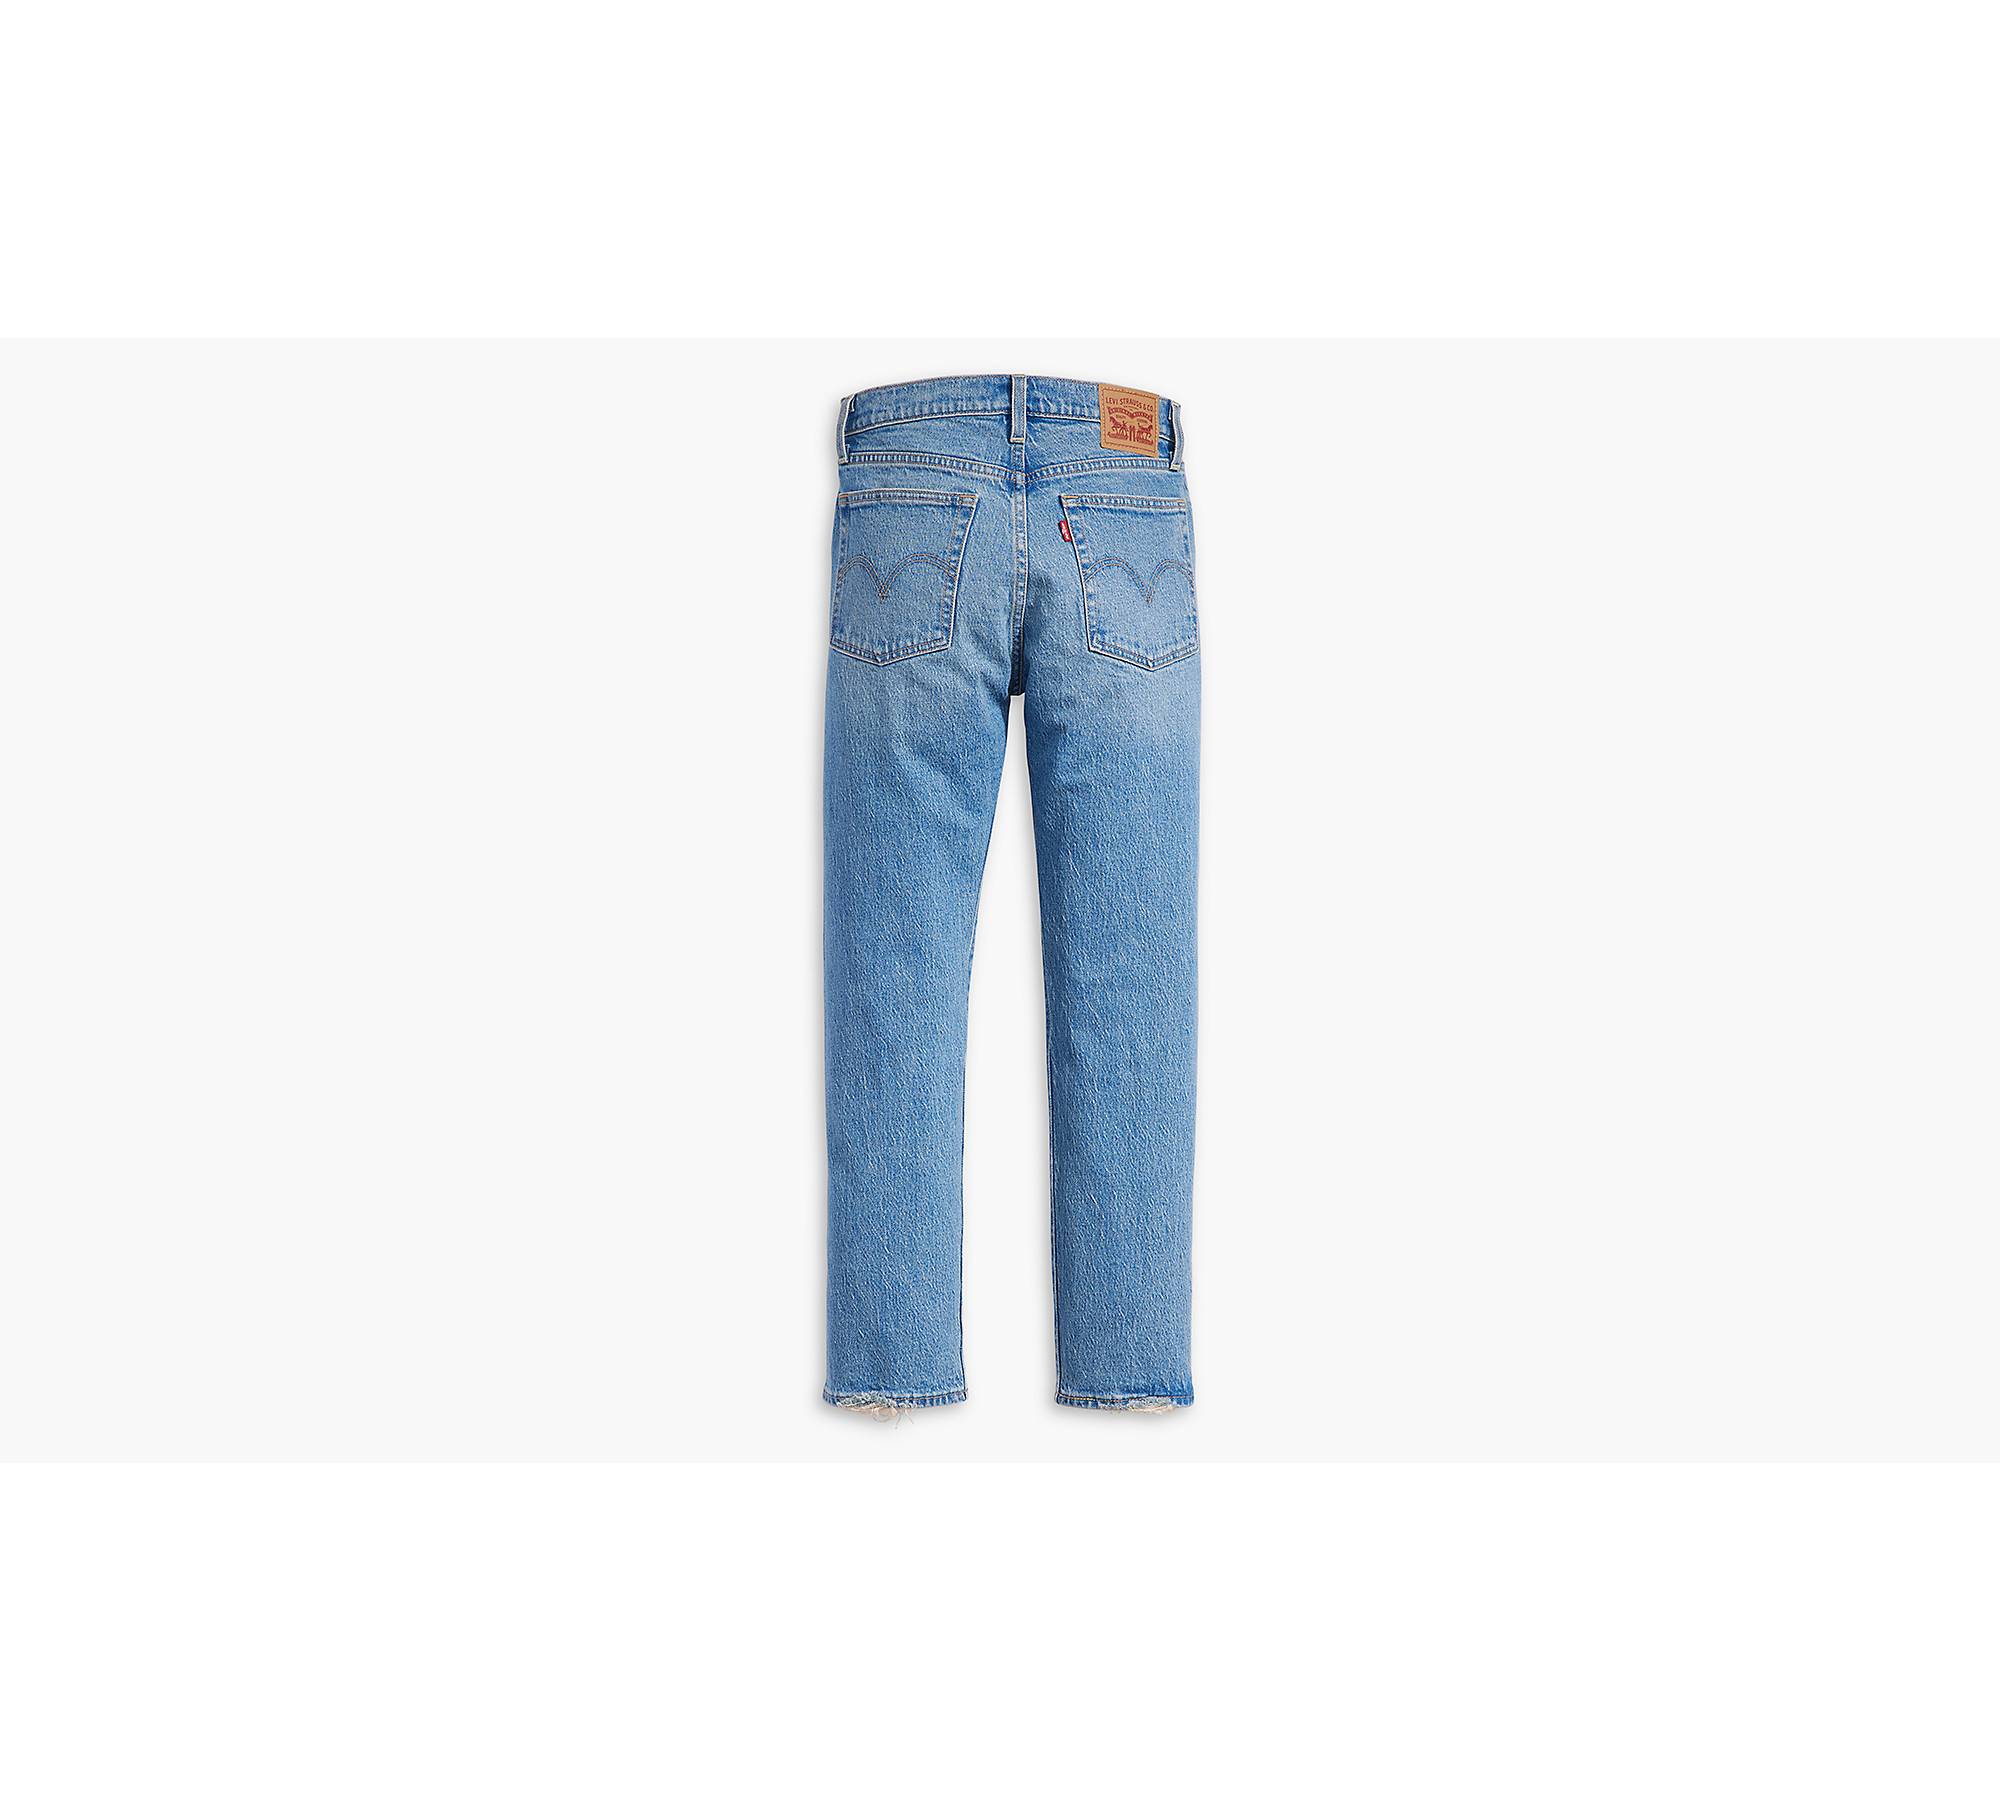 Vintage Levis Jeans Womens Sz 31x27 Wedgie Straight Big E Button